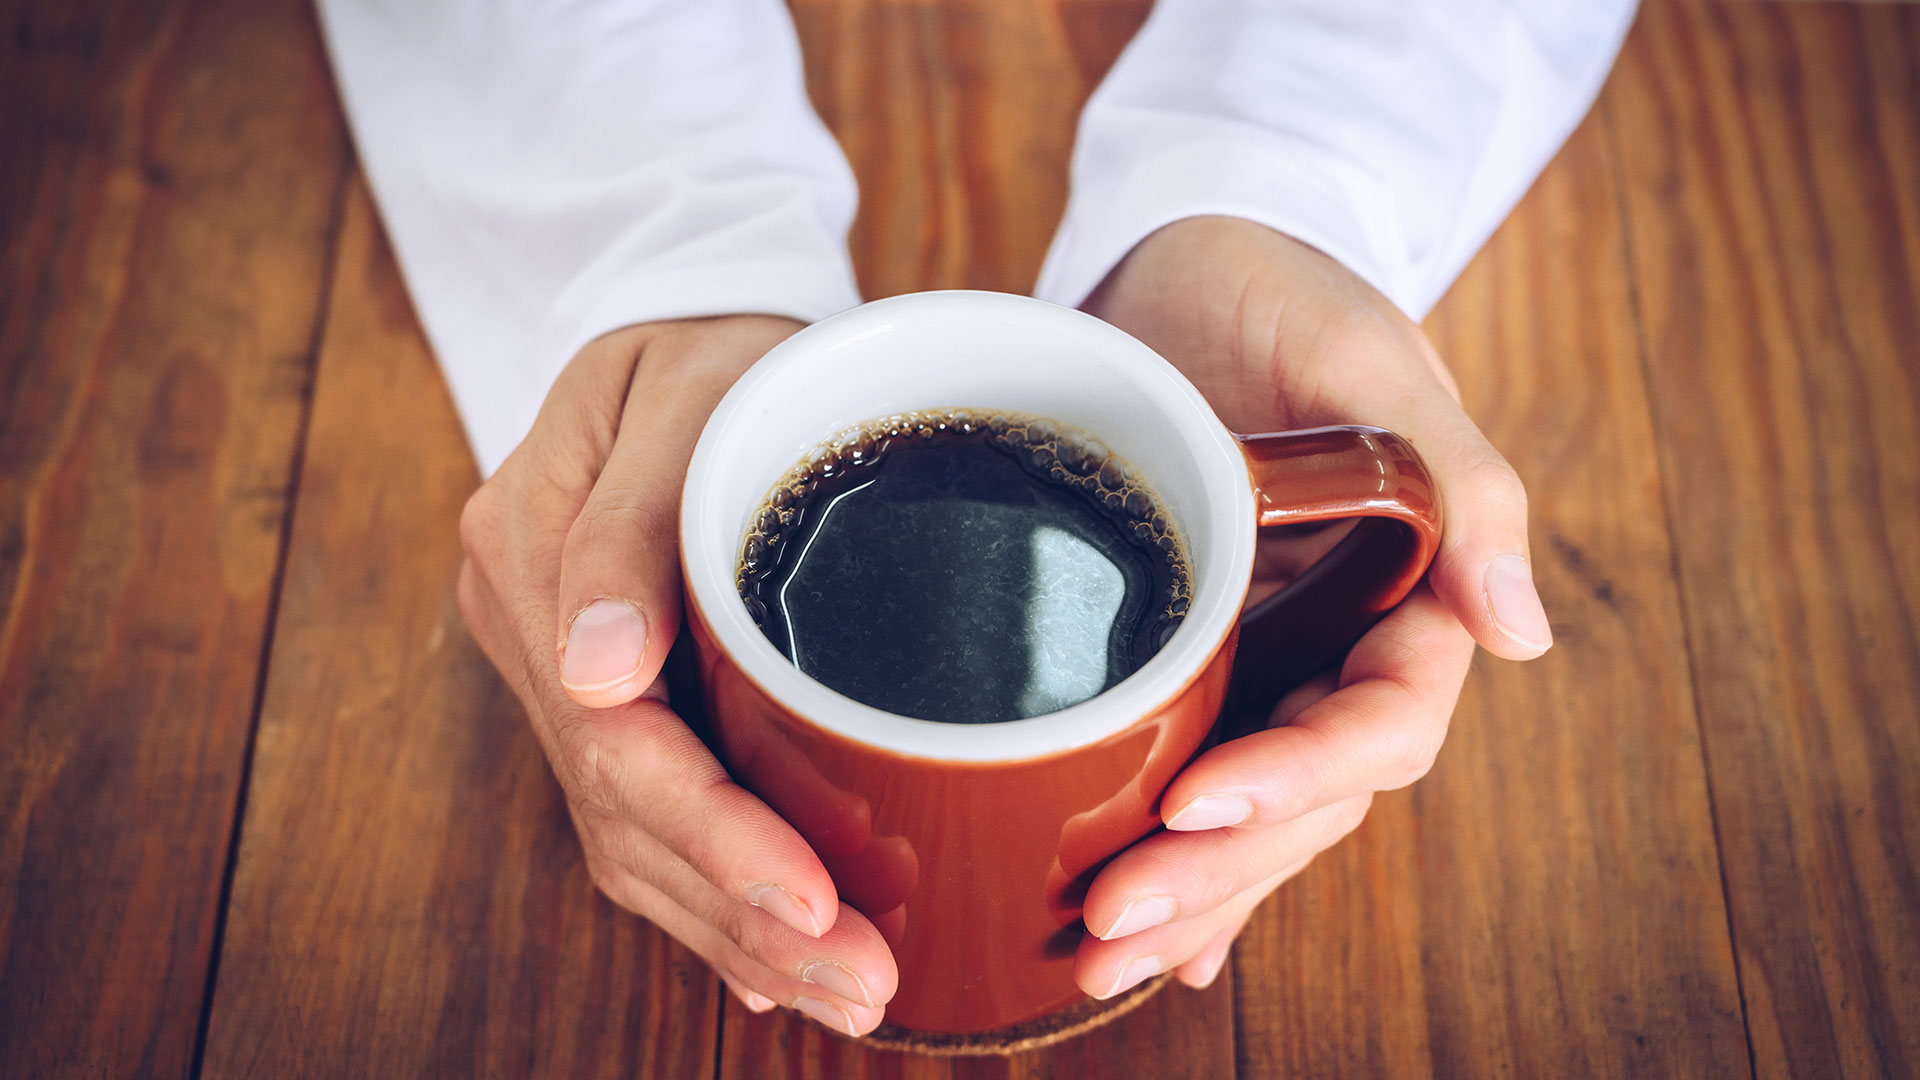 La cafeína es el estimulante más popular del mundo y una parte significativa de la población mundial la consume a diario a través del café, el té, las gaseosas y las bebidas energéticas (Getty Images)